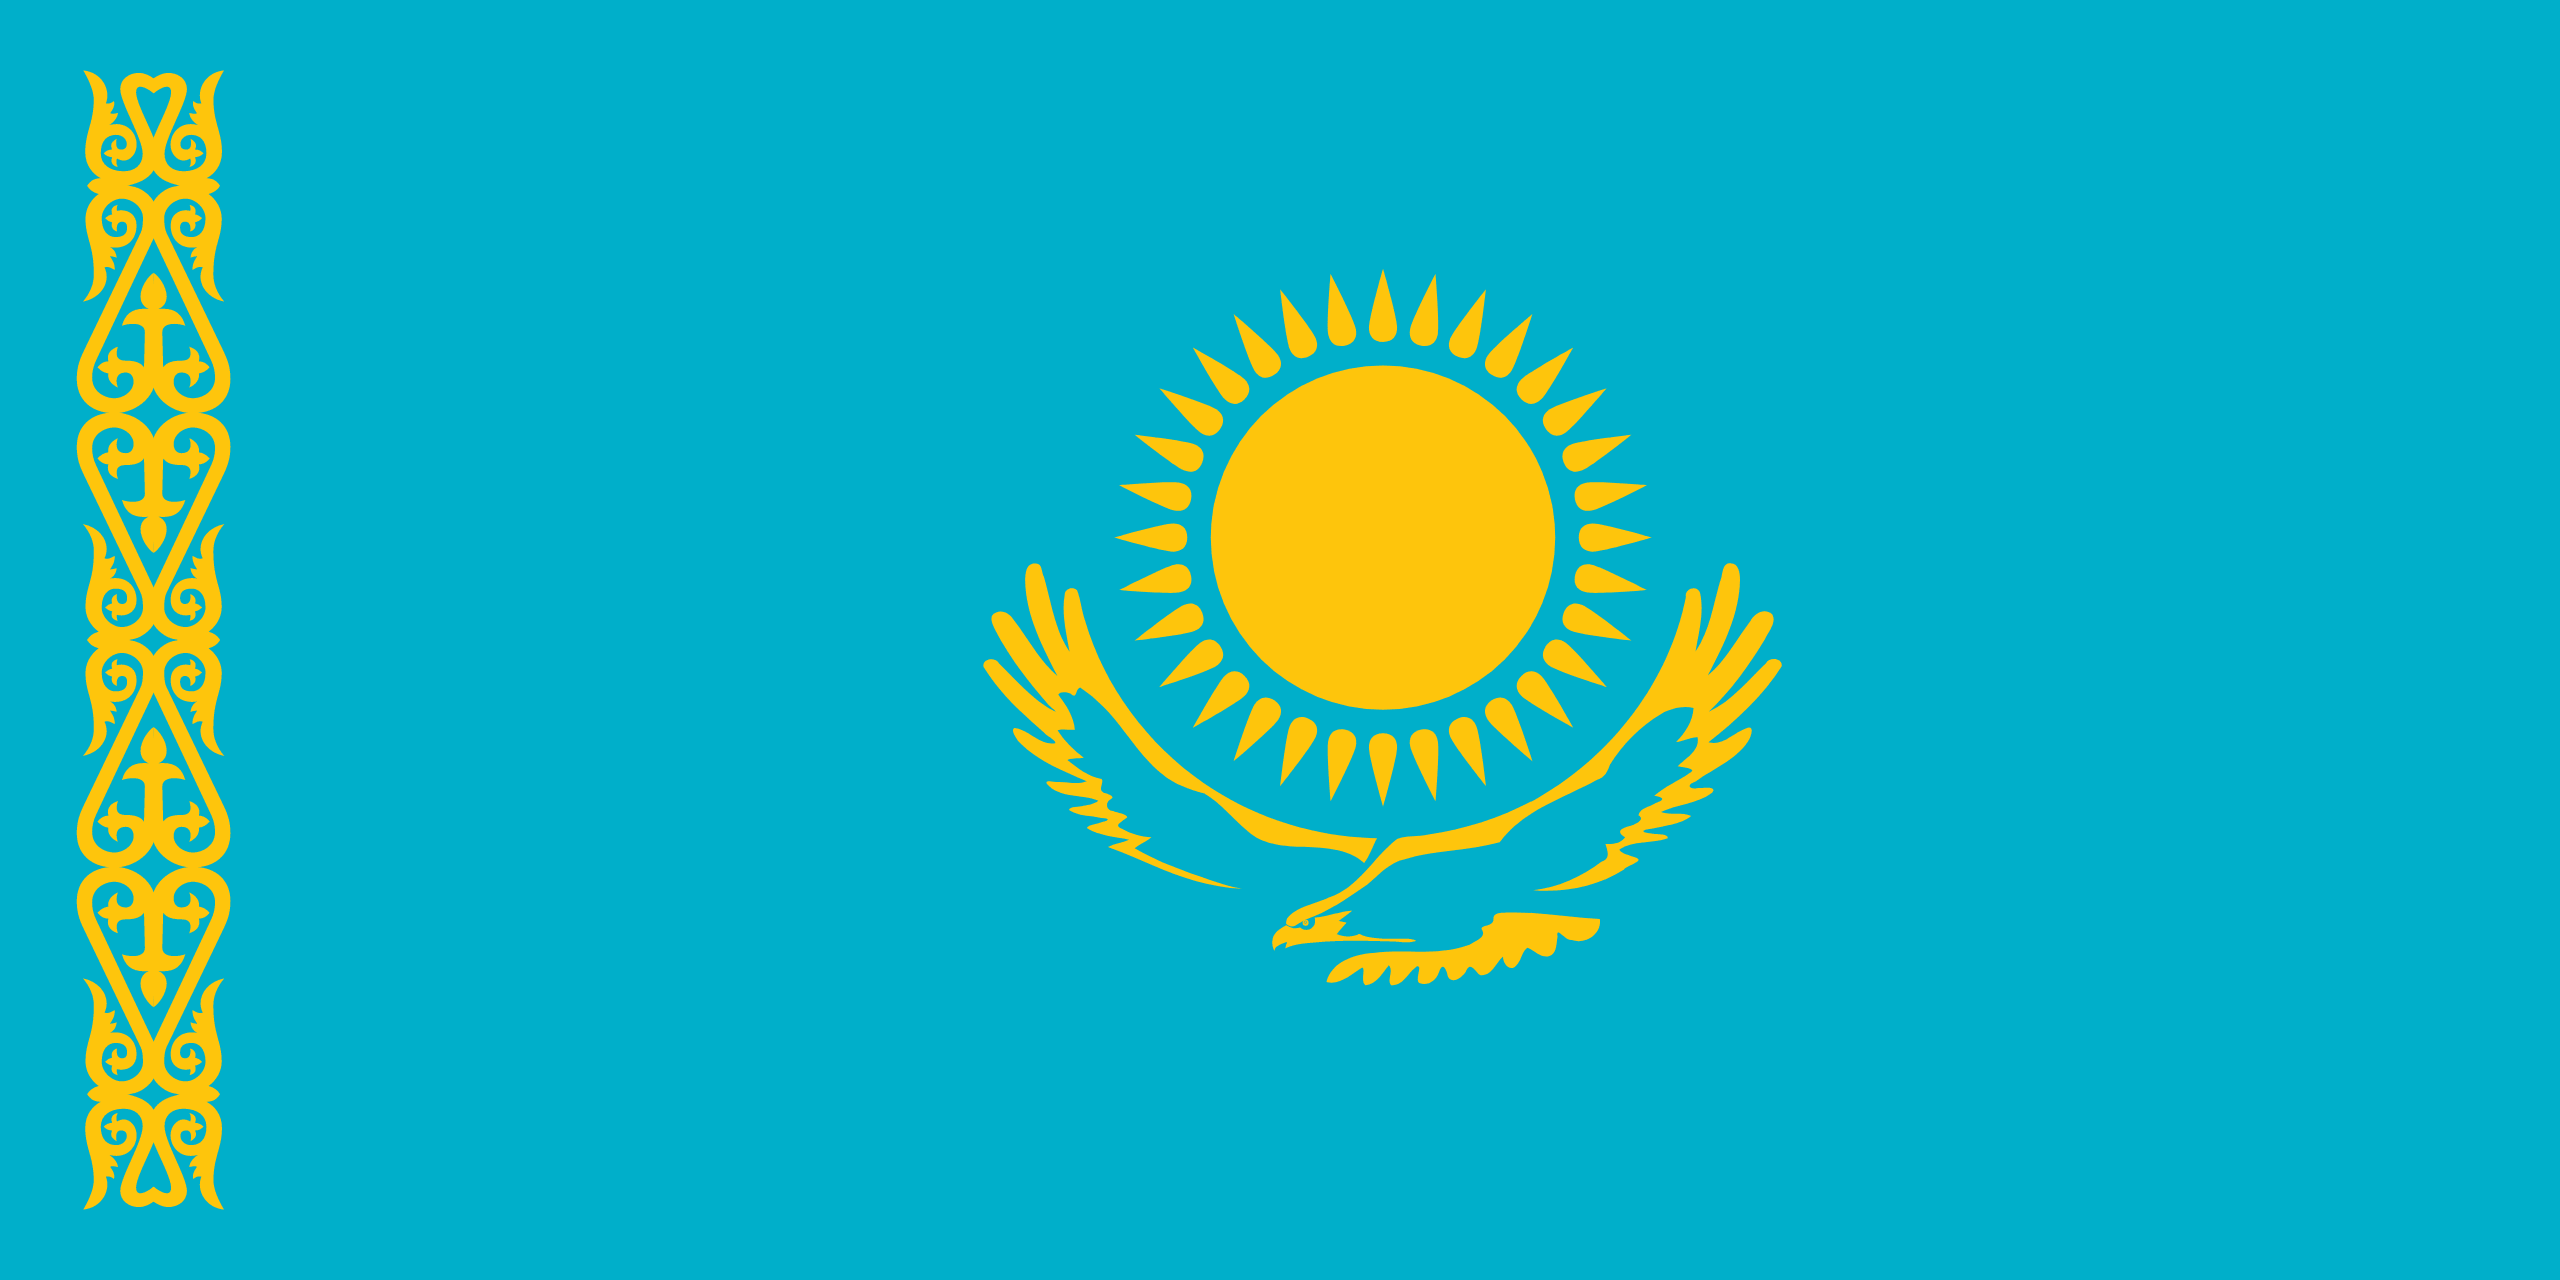 Σημαία Καζακστάν